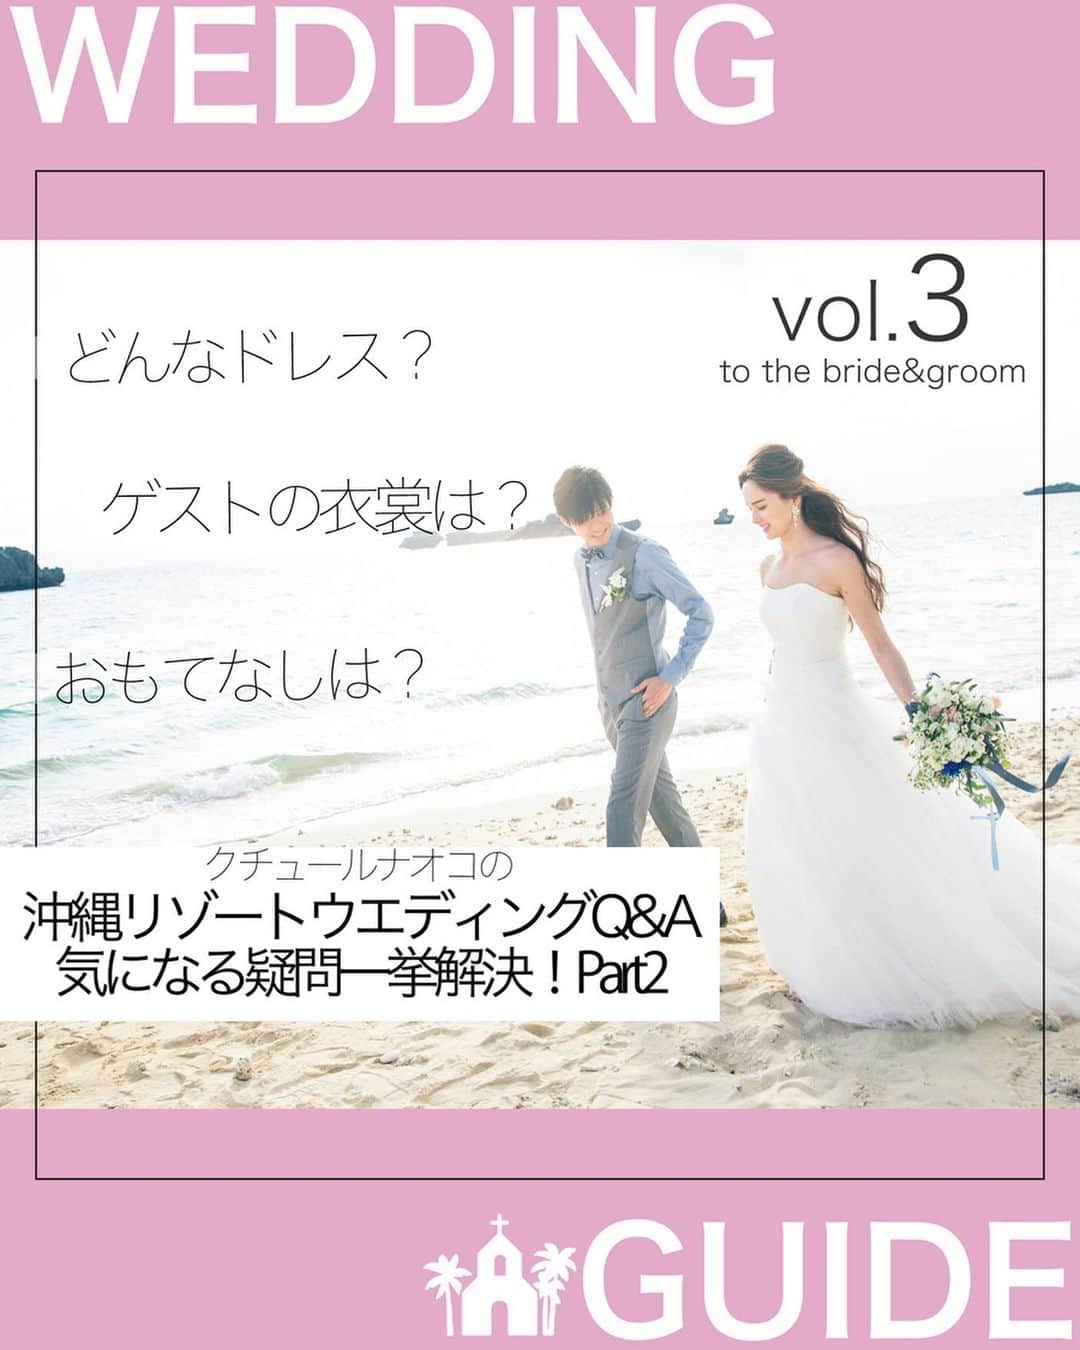 クチュールナオコウエディングさんのインスタグラム写真 - (クチュールナオコウエディングInstagram)「*  『『#WEDDINGGUIDE  Vol.3』』 💍to  the bride&groom✨  こちらでは毎回ウエディングに関する様々な情報をお届けいたします♪  今回はクチュールナオコの「#沖縄リゾートウエディング Q&A気になる疑問一挙解決！Part2」をお届け💖  リゾートウエディング🏝⛪️興味はあるけど疑問もたくさん💭という方も多いのではないでしょうか❓  だからこそ、不安や悩みは解消して欲しいという願いを込めて、よくある質問にお答えします✨❣️  これから挙式を控えている方も、ご検討中の方も 少しでも参考になれば幸いです🌈  クチュールナオコリゾートウエディングでは、専任の コーディネーターがお2人らしいウエディングを トータルプロデュース致します💁🏻‍♀️  オンライン相談も受け付けておりますので 是非お気軽にお問い合わせくださいませ。  詳しくはプロフィールのURLから ホームページをチェック👀 お得なキャンペーンも沢山ご用意しております💓  Part1は過去の投稿をチェック❣️  ＝＝＝＝＝＝＝＝＝＝﻿＝＝＝＝＝＝＝＝＝﻿ ﻿ @couturenaoco_resortwedding ﻿ 【#クチュールナオコウェディング】をつけてぜひ投稿&フォローしてくださいね♬﻿ このアカウントでご紹介させていただきます💕﻿ ﻿ ﻿ ・・・・・・・・・・・・・・・・﻿ 🎀クチュールナオコウェディングとは﻿ ・・・・・・・・・・・・・・・・ ﻿ 「挙式日はいちばん素敵におしゃれをする日」をコンセプトにドレスショップならではの感性で、﻿ ドレス・タキシードはもちろんのこと、挙式やパーティー、フォトなど﻿ おふたりのご希望に合わせたウエディングスタイルをトータルコーディネート👗﻿ 特別なその日を快適に迎えるためのお手伝いをいたします♡﻿ ﻿ ・・・・・・・・・・・・・・・・﻿ 🎀クチュールナオコが選ばれる4つのポイント﻿ ・・・・・・・・・・・・・・・・﻿ ﻿ 👗ドレスショップならでは♪ドレスが圧倒的に豊富﻿ ﻿ ✈️トータルコーディネートから旅行まで♪挙式以外もしっかりサポート﻿ ﻿ ⛪理想の挙式スタイルが叶う♪豊富なエリアと会場﻿ ﻿ 💁日本人専任スタッフがお手伝い♪安心の現地サロン﻿ ﻿ ・・・・・・・・・・・・・・・・﻿ 🎀クチュールナオコサロン情報﻿ ・・・・・・・・・・・・・・・・ ﻿ ﻿ 銀座本店・札幌店・仙台店・名古屋店・京都店・心斎橋店・福岡店﻿ ﻿ ﻿ ◆◇リゾートウェディング相談会🌴開催中◇◆﻿ ﻿ クチュールナオコ各店では無料相談会を実施しています♪﻿ 毎月のフェアではスペシャル特典もございますので、ぜひご来店お待ちしております♡﻿ ﻿ 資料請求・来店予約・オンライン予約は、@couturenaoco_resortwedding プロフィールのHP🔗から♬﻿ ﻿ ＝＝＝＝＝＝＝＝＝﻿＝＝＝＝＝＝＝＝＝﻿＝ ﻿ #クチュールナオコ﻿ #couturenaoco ﻿ #クチュールナオコウェディング ﻿ #couturenaocowedding﻿ #ナオコウェディングストーリー﻿ #naocoweddingstory﻿ ﻿ ﻿ #ウエディング情報 #ウエディング  #質問コーナー  #wedding  #沖縄ウエディング  #沖縄婚  #リゾートウエディング #okinawawedding  #okinawajapan  #プレ花嫁  #プレ花嫁さんと繋がりたい  #2021婚  #アイネスヴィラノッツェ沖縄  #かりゆしウェア  #列席衣裳  #kiyokohata #キヨコハタ #jillstuart #ディズニードレス  #ブライズメイド #mikaninagawa #disneydress」2月24日 18時05分 - couturenaoco_resortwedding